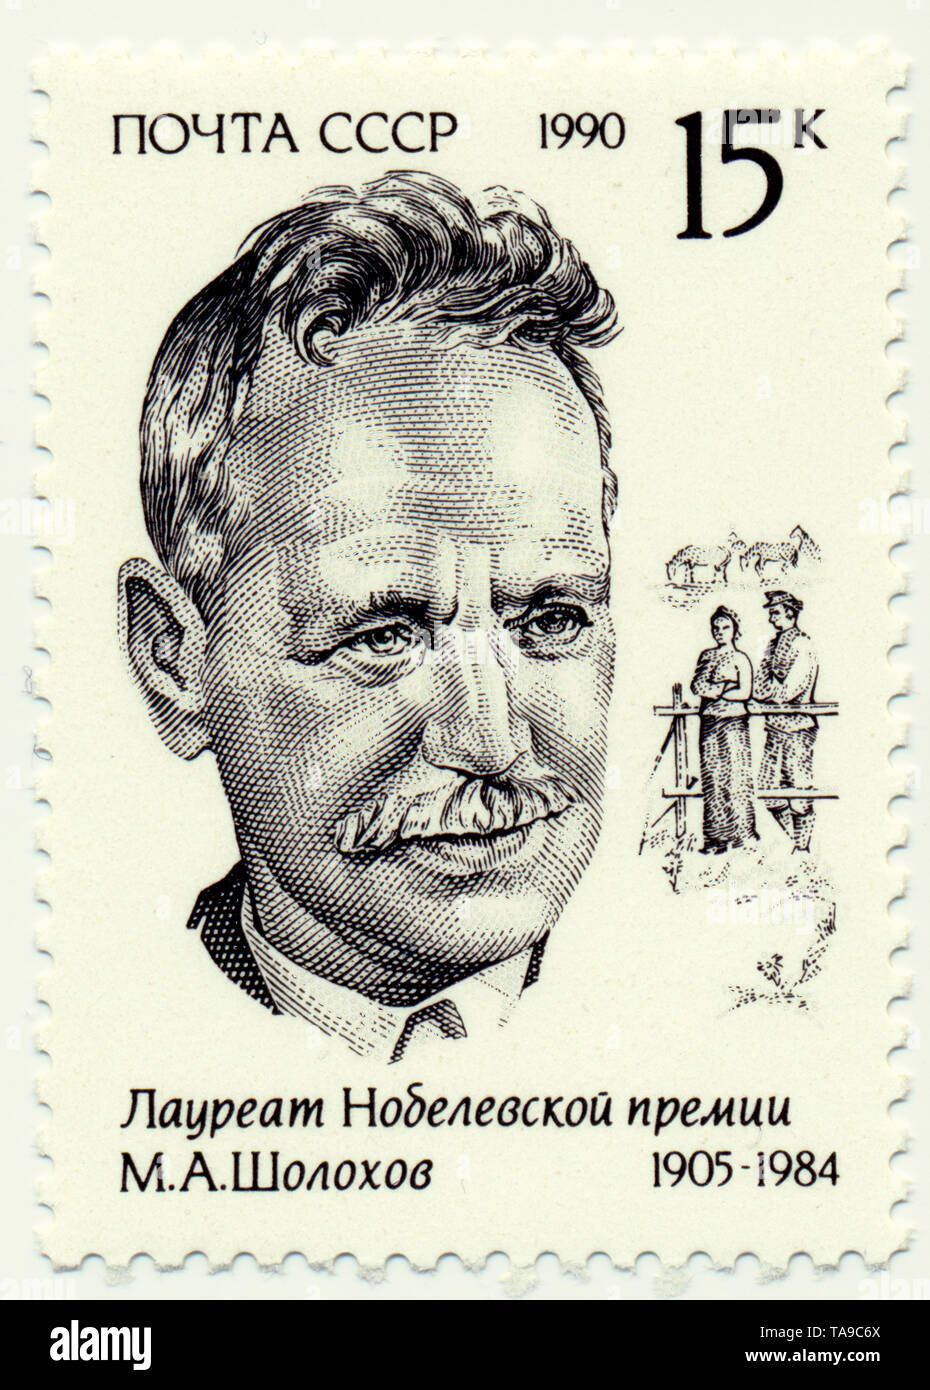 Historische Briefmarken von der UdSSR, Historische Briefmarken, Michail Alexandrowitsch Scholochow, 1990, UDSSR Stockfoto